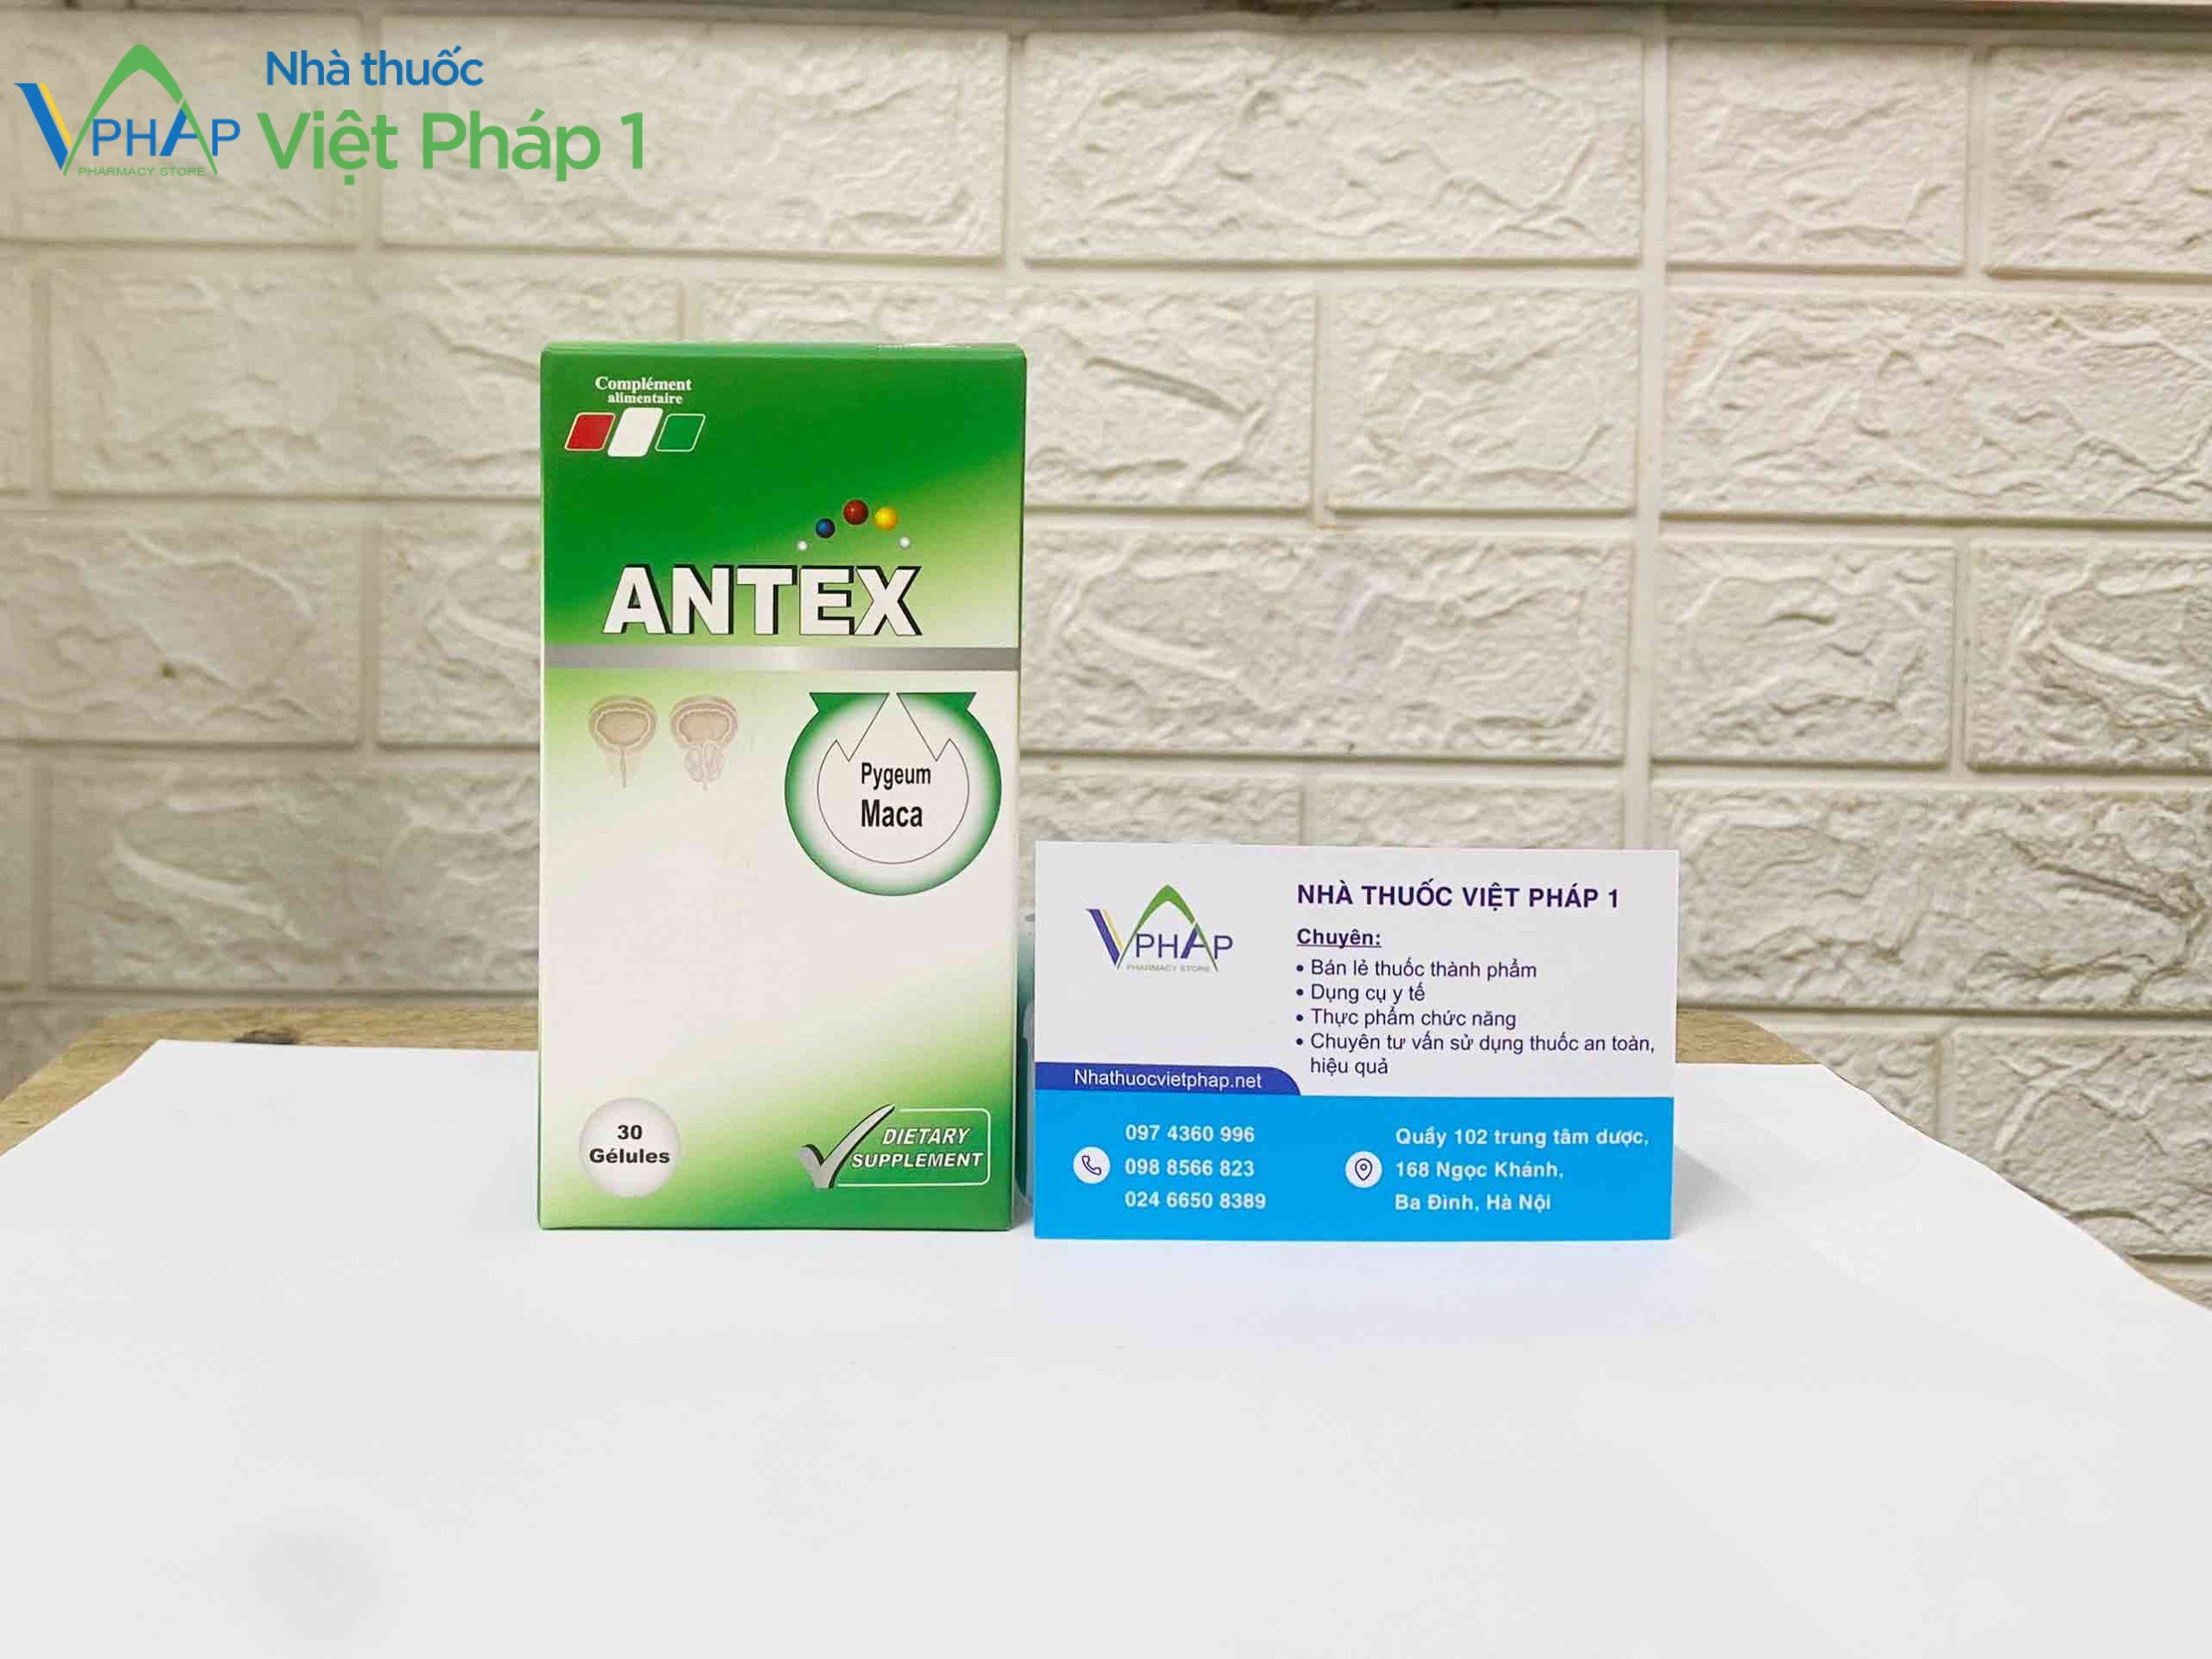 Thực phẩm bảo vệ sức khỏe ANTEX được phân phối chính hãng tại Nhà Thuốc Việt Pháp 1